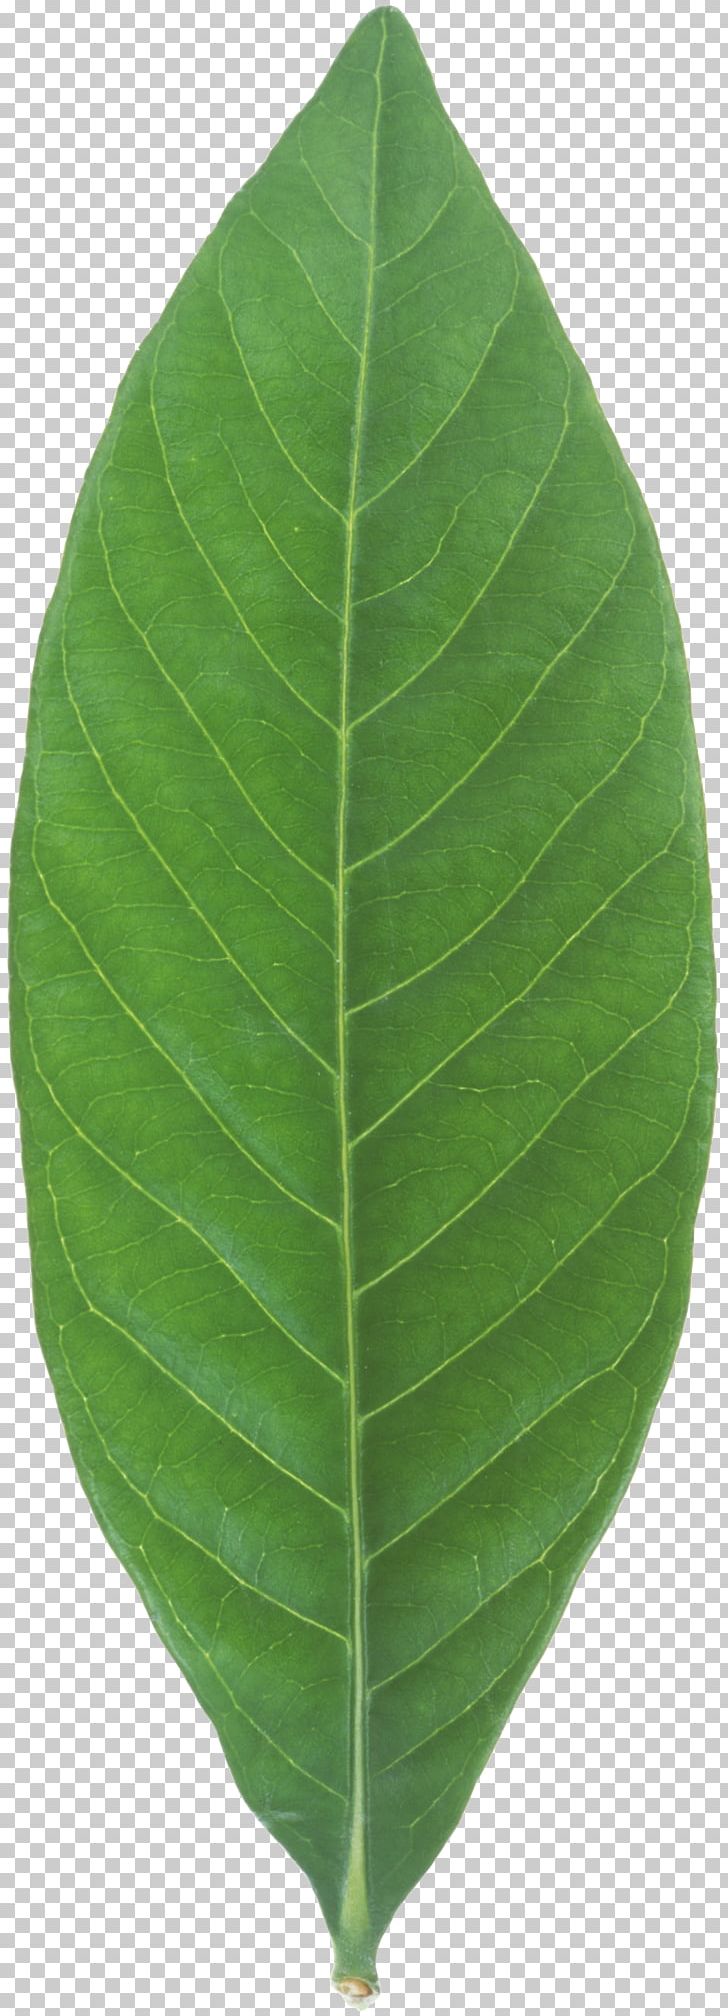 Banana Leaf Plant PNG, Clipart, Banana, Banana Leaf, Food Drinks, Leaf, Mint Leaf Free PNG Download